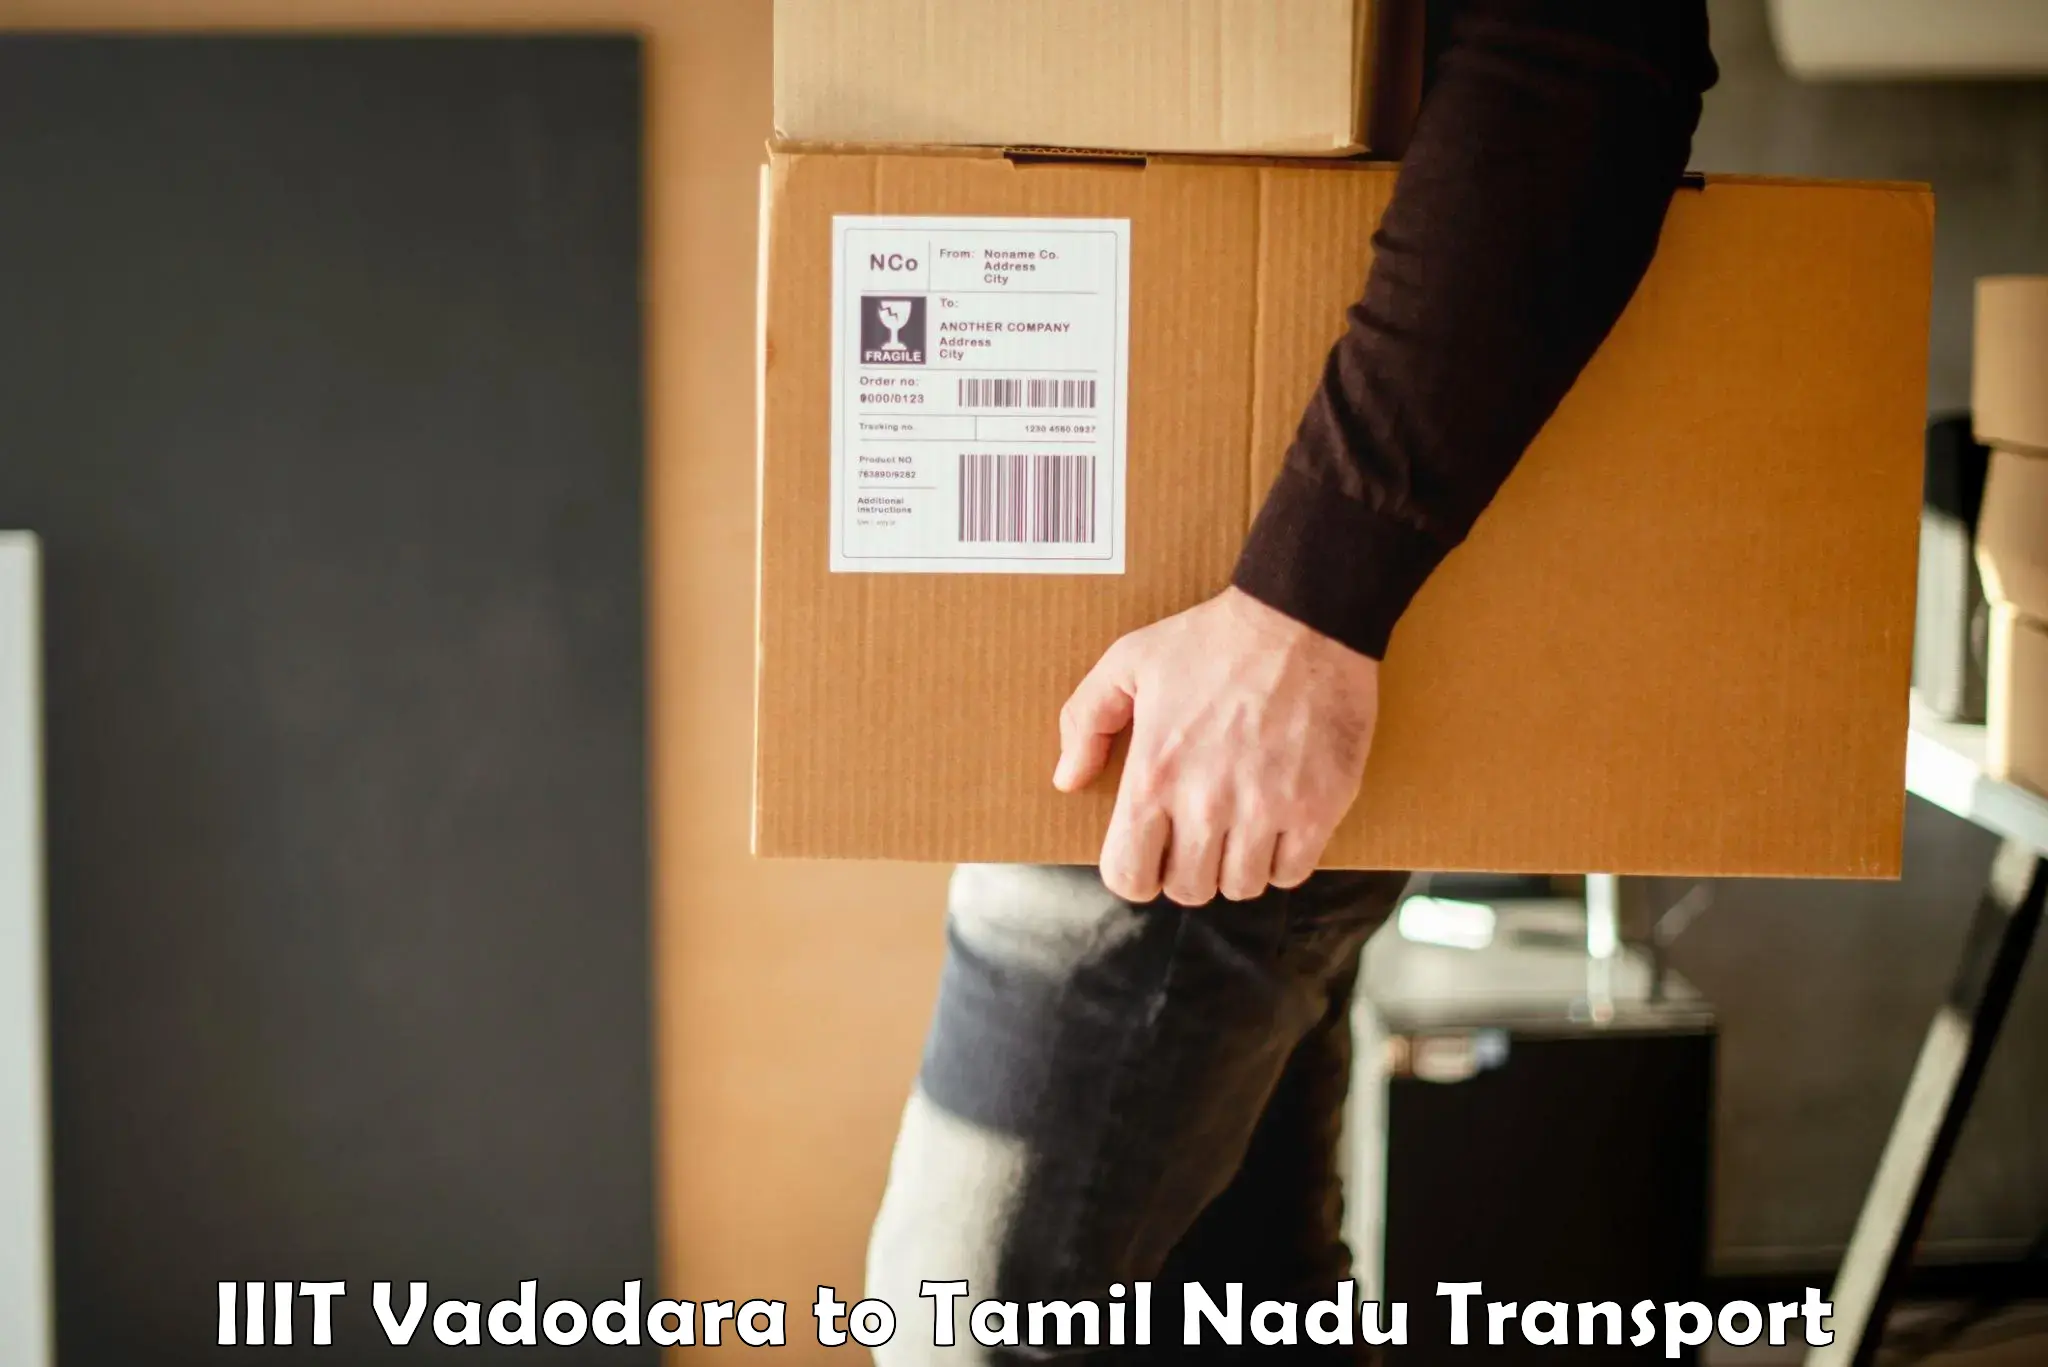 Delivery service IIIT Vadodara to Viluppuram